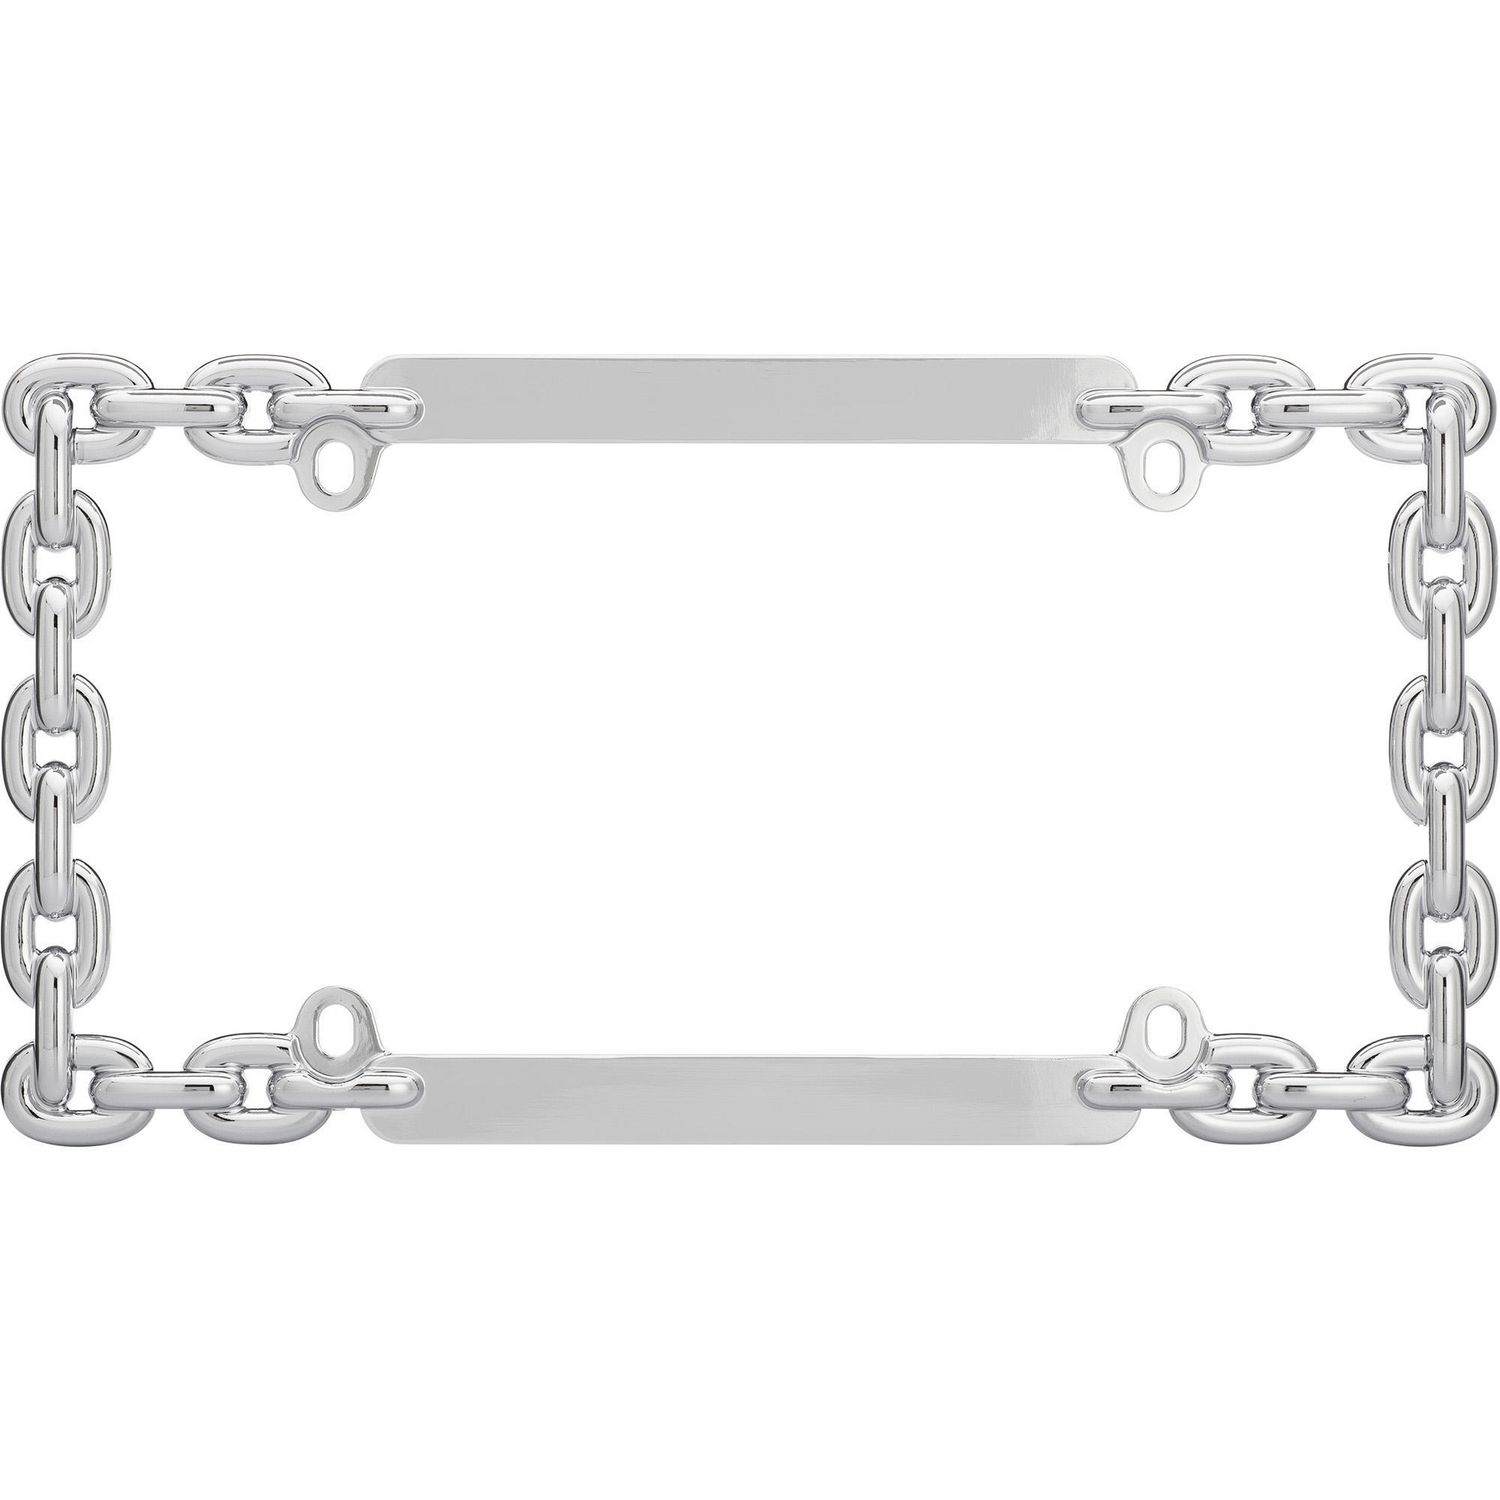 Cruiser Accessories Chain, Chrome License Plate Frame | Walmart Canada